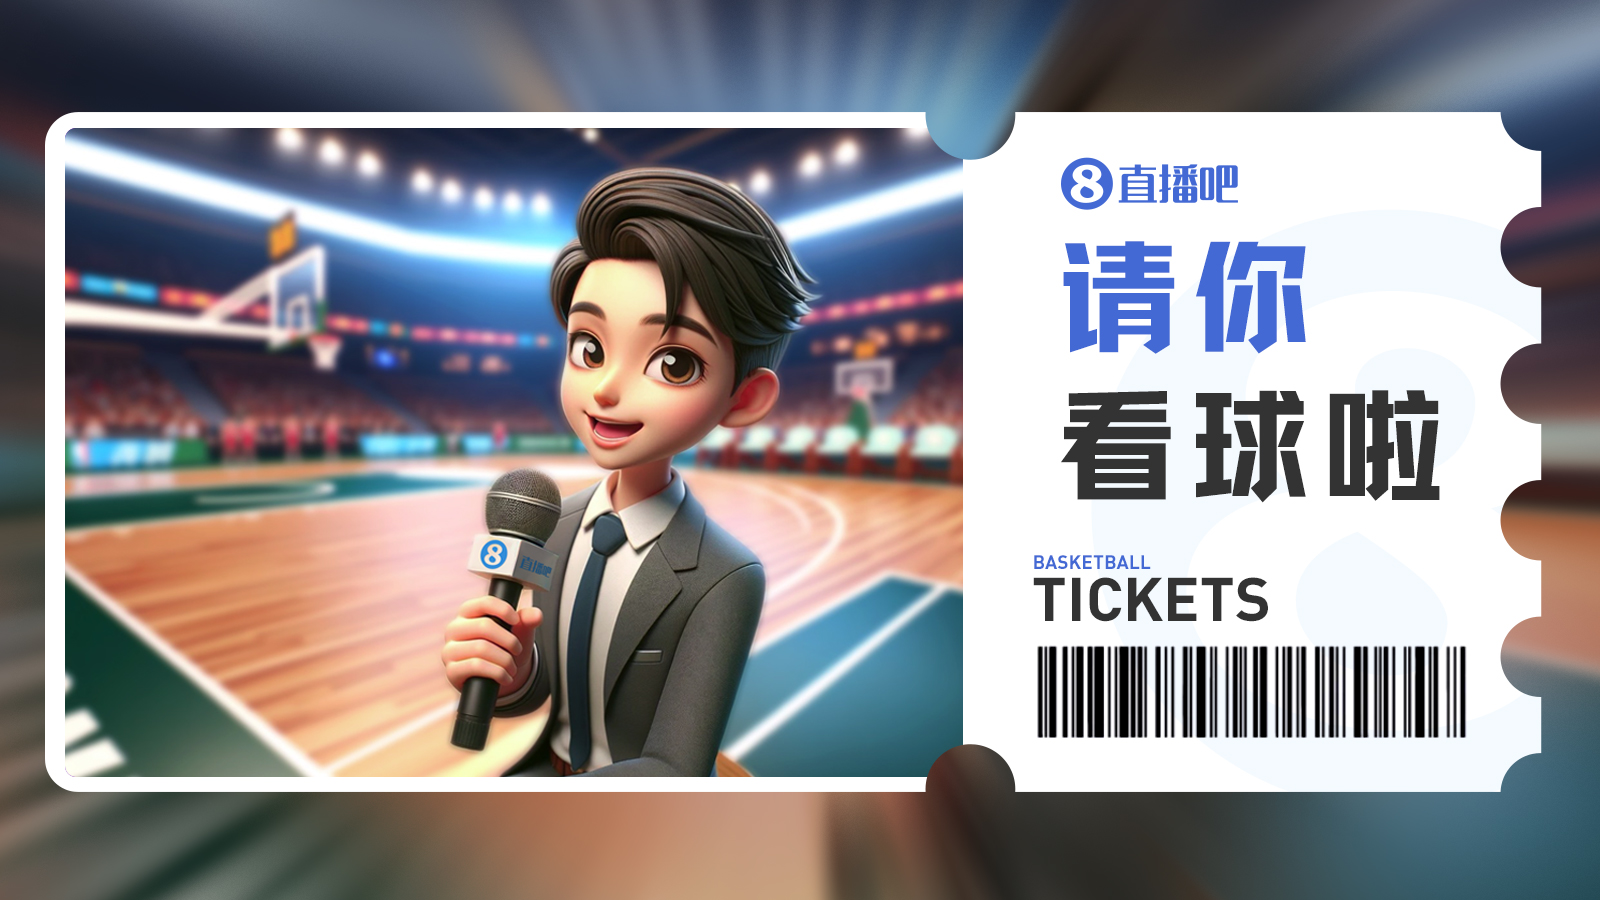 广东球迷看过来留言抽3月31日『广东vs广州』免费门票咯